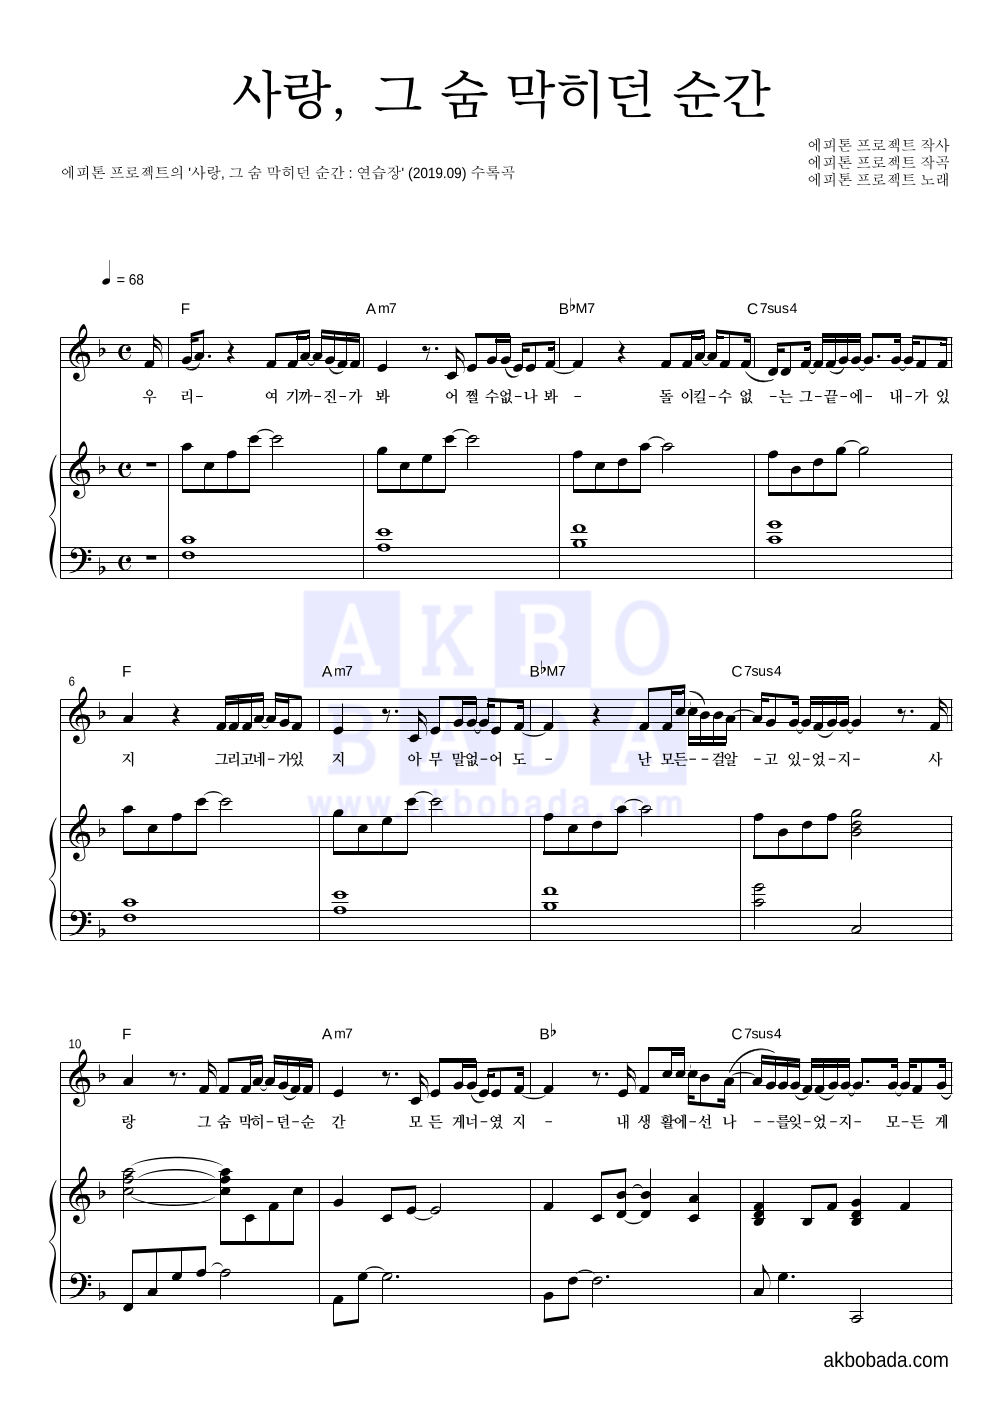 에피톤 프로젝트 - 사랑, 그 숨 막히던 순간 피아노 3단 악보 